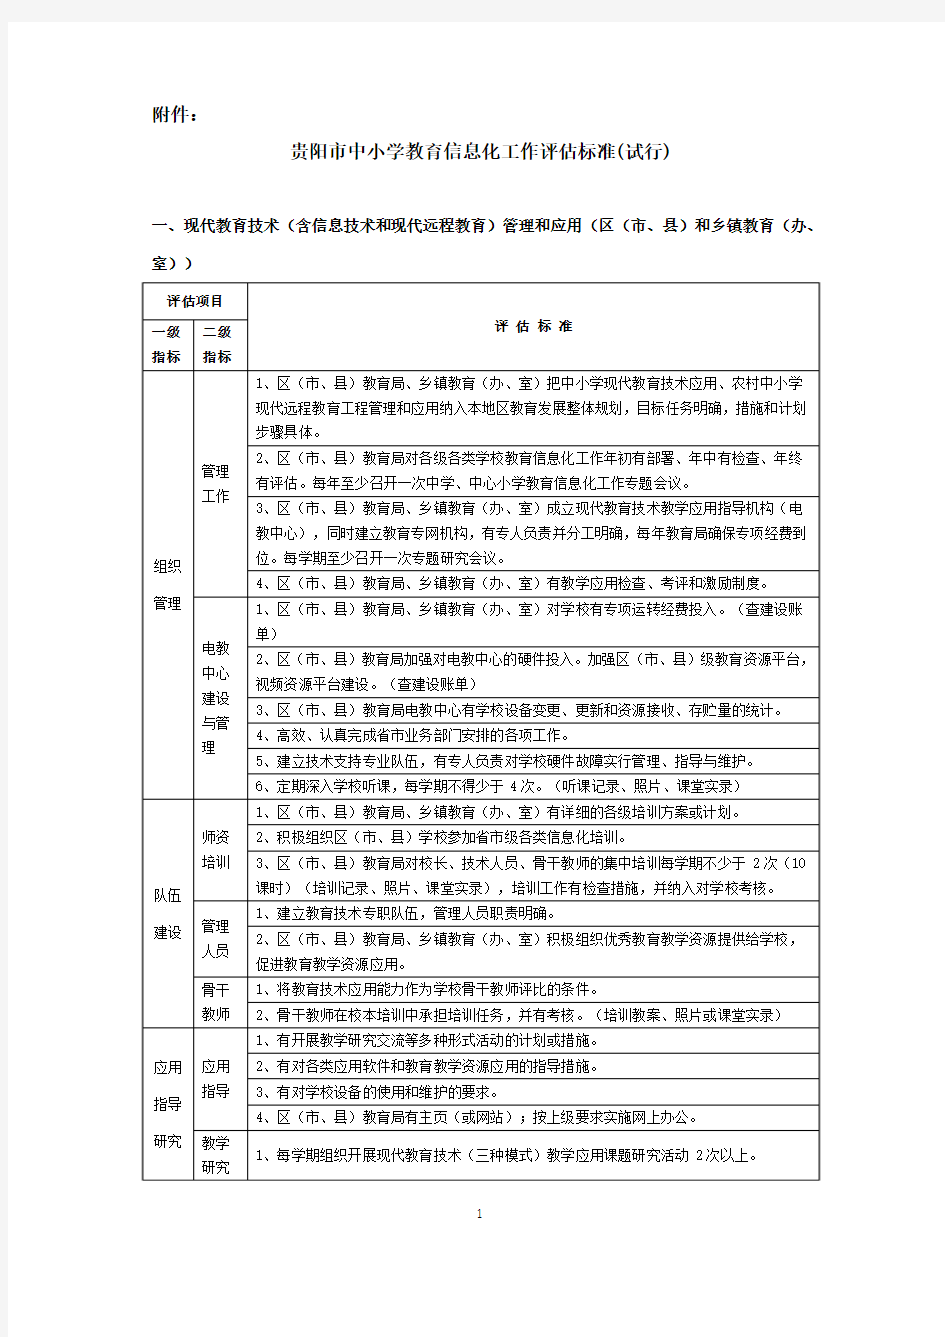 贵阳市中小学教育信息化工作评估标准(试行)